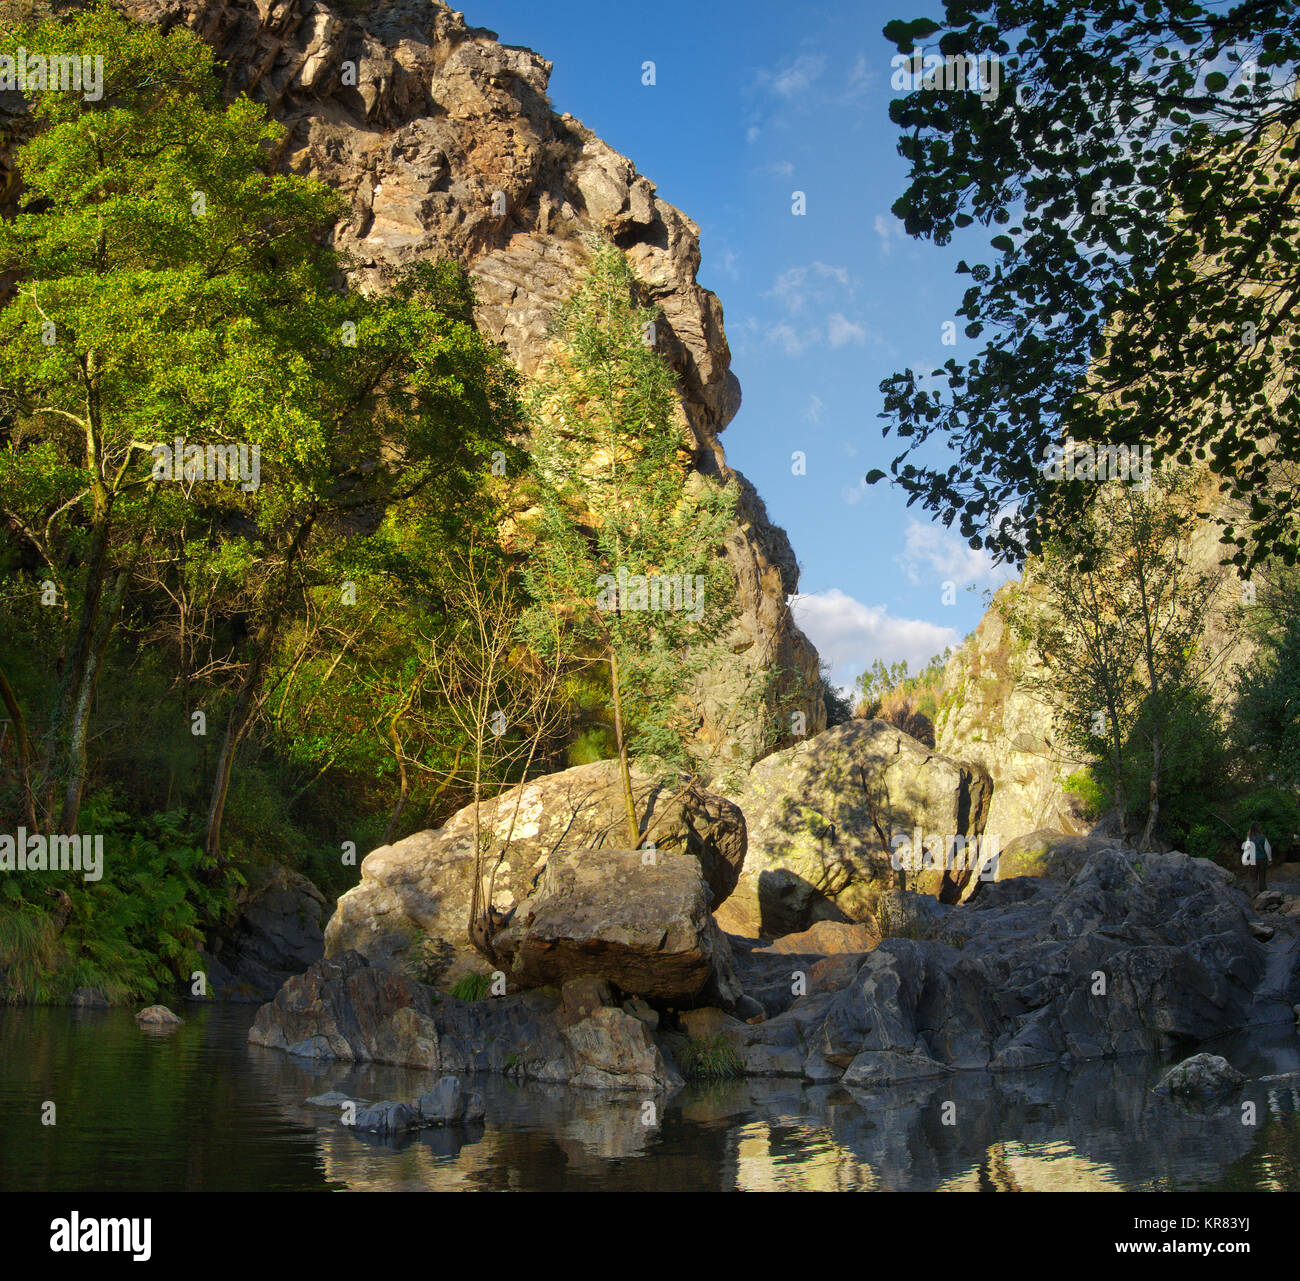 Una piccola isola di rocce erose e massi nel mezzo del fiume Alge a Fragas de Sao Simao. Alberi verdi e del canyon sullo sfondo. Figueiro Foto Stock